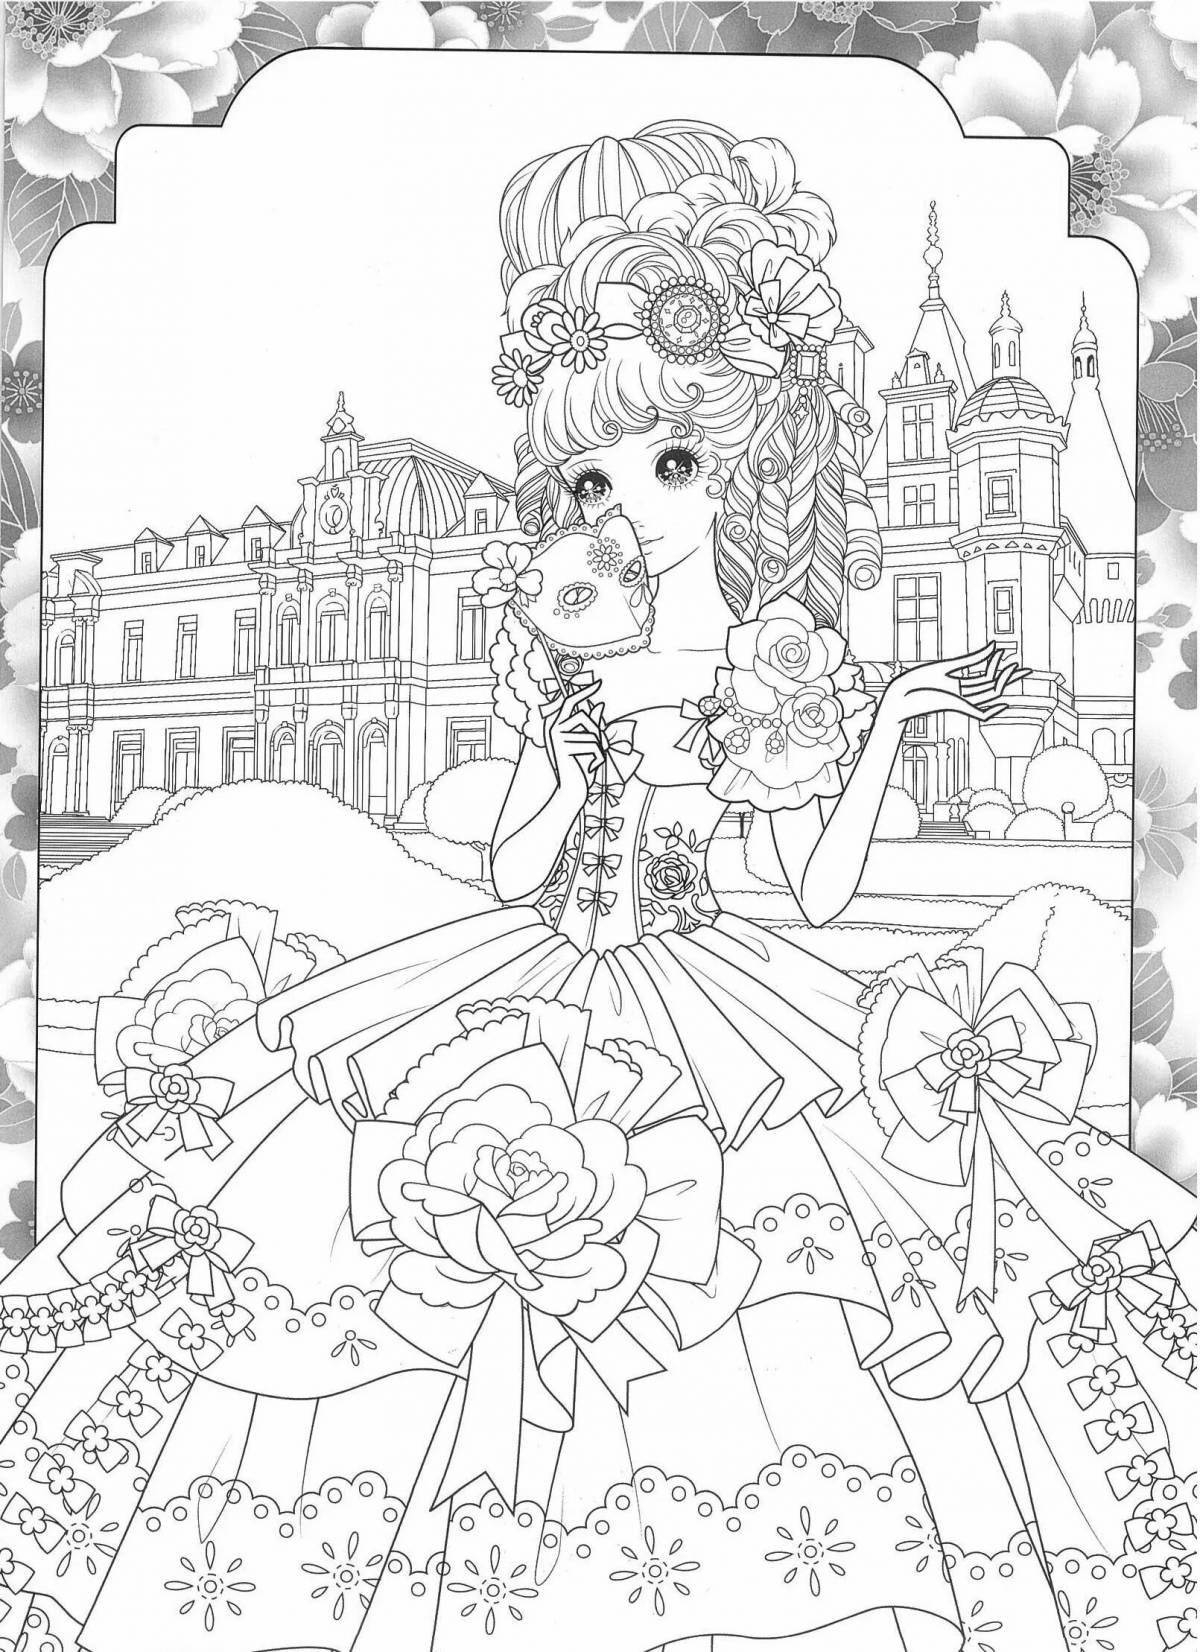 Elegant princess coloring book